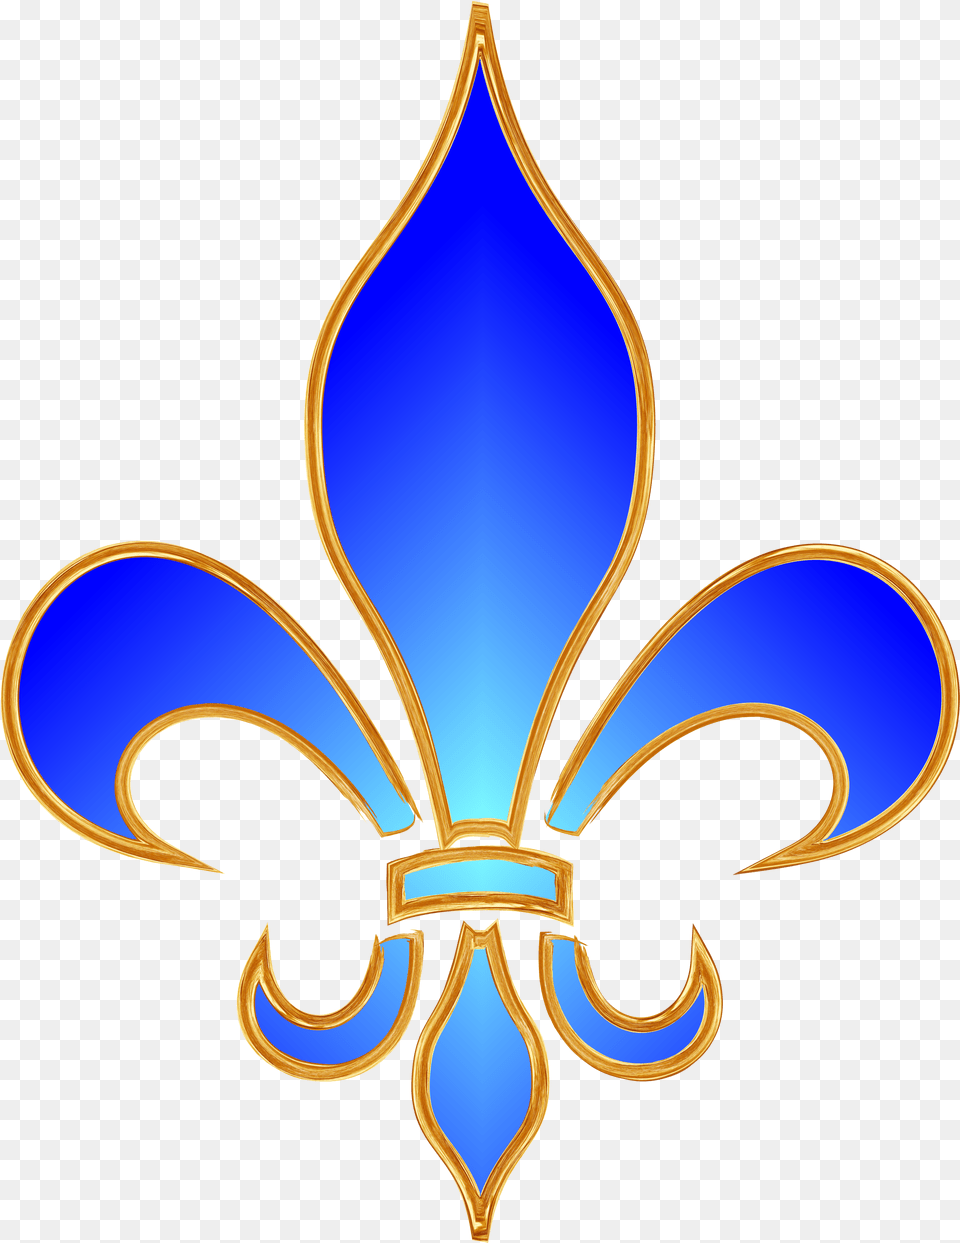 Fleur De Lis Download Fleur De Lis Blue, Emblem, Symbol Free Transparent Png